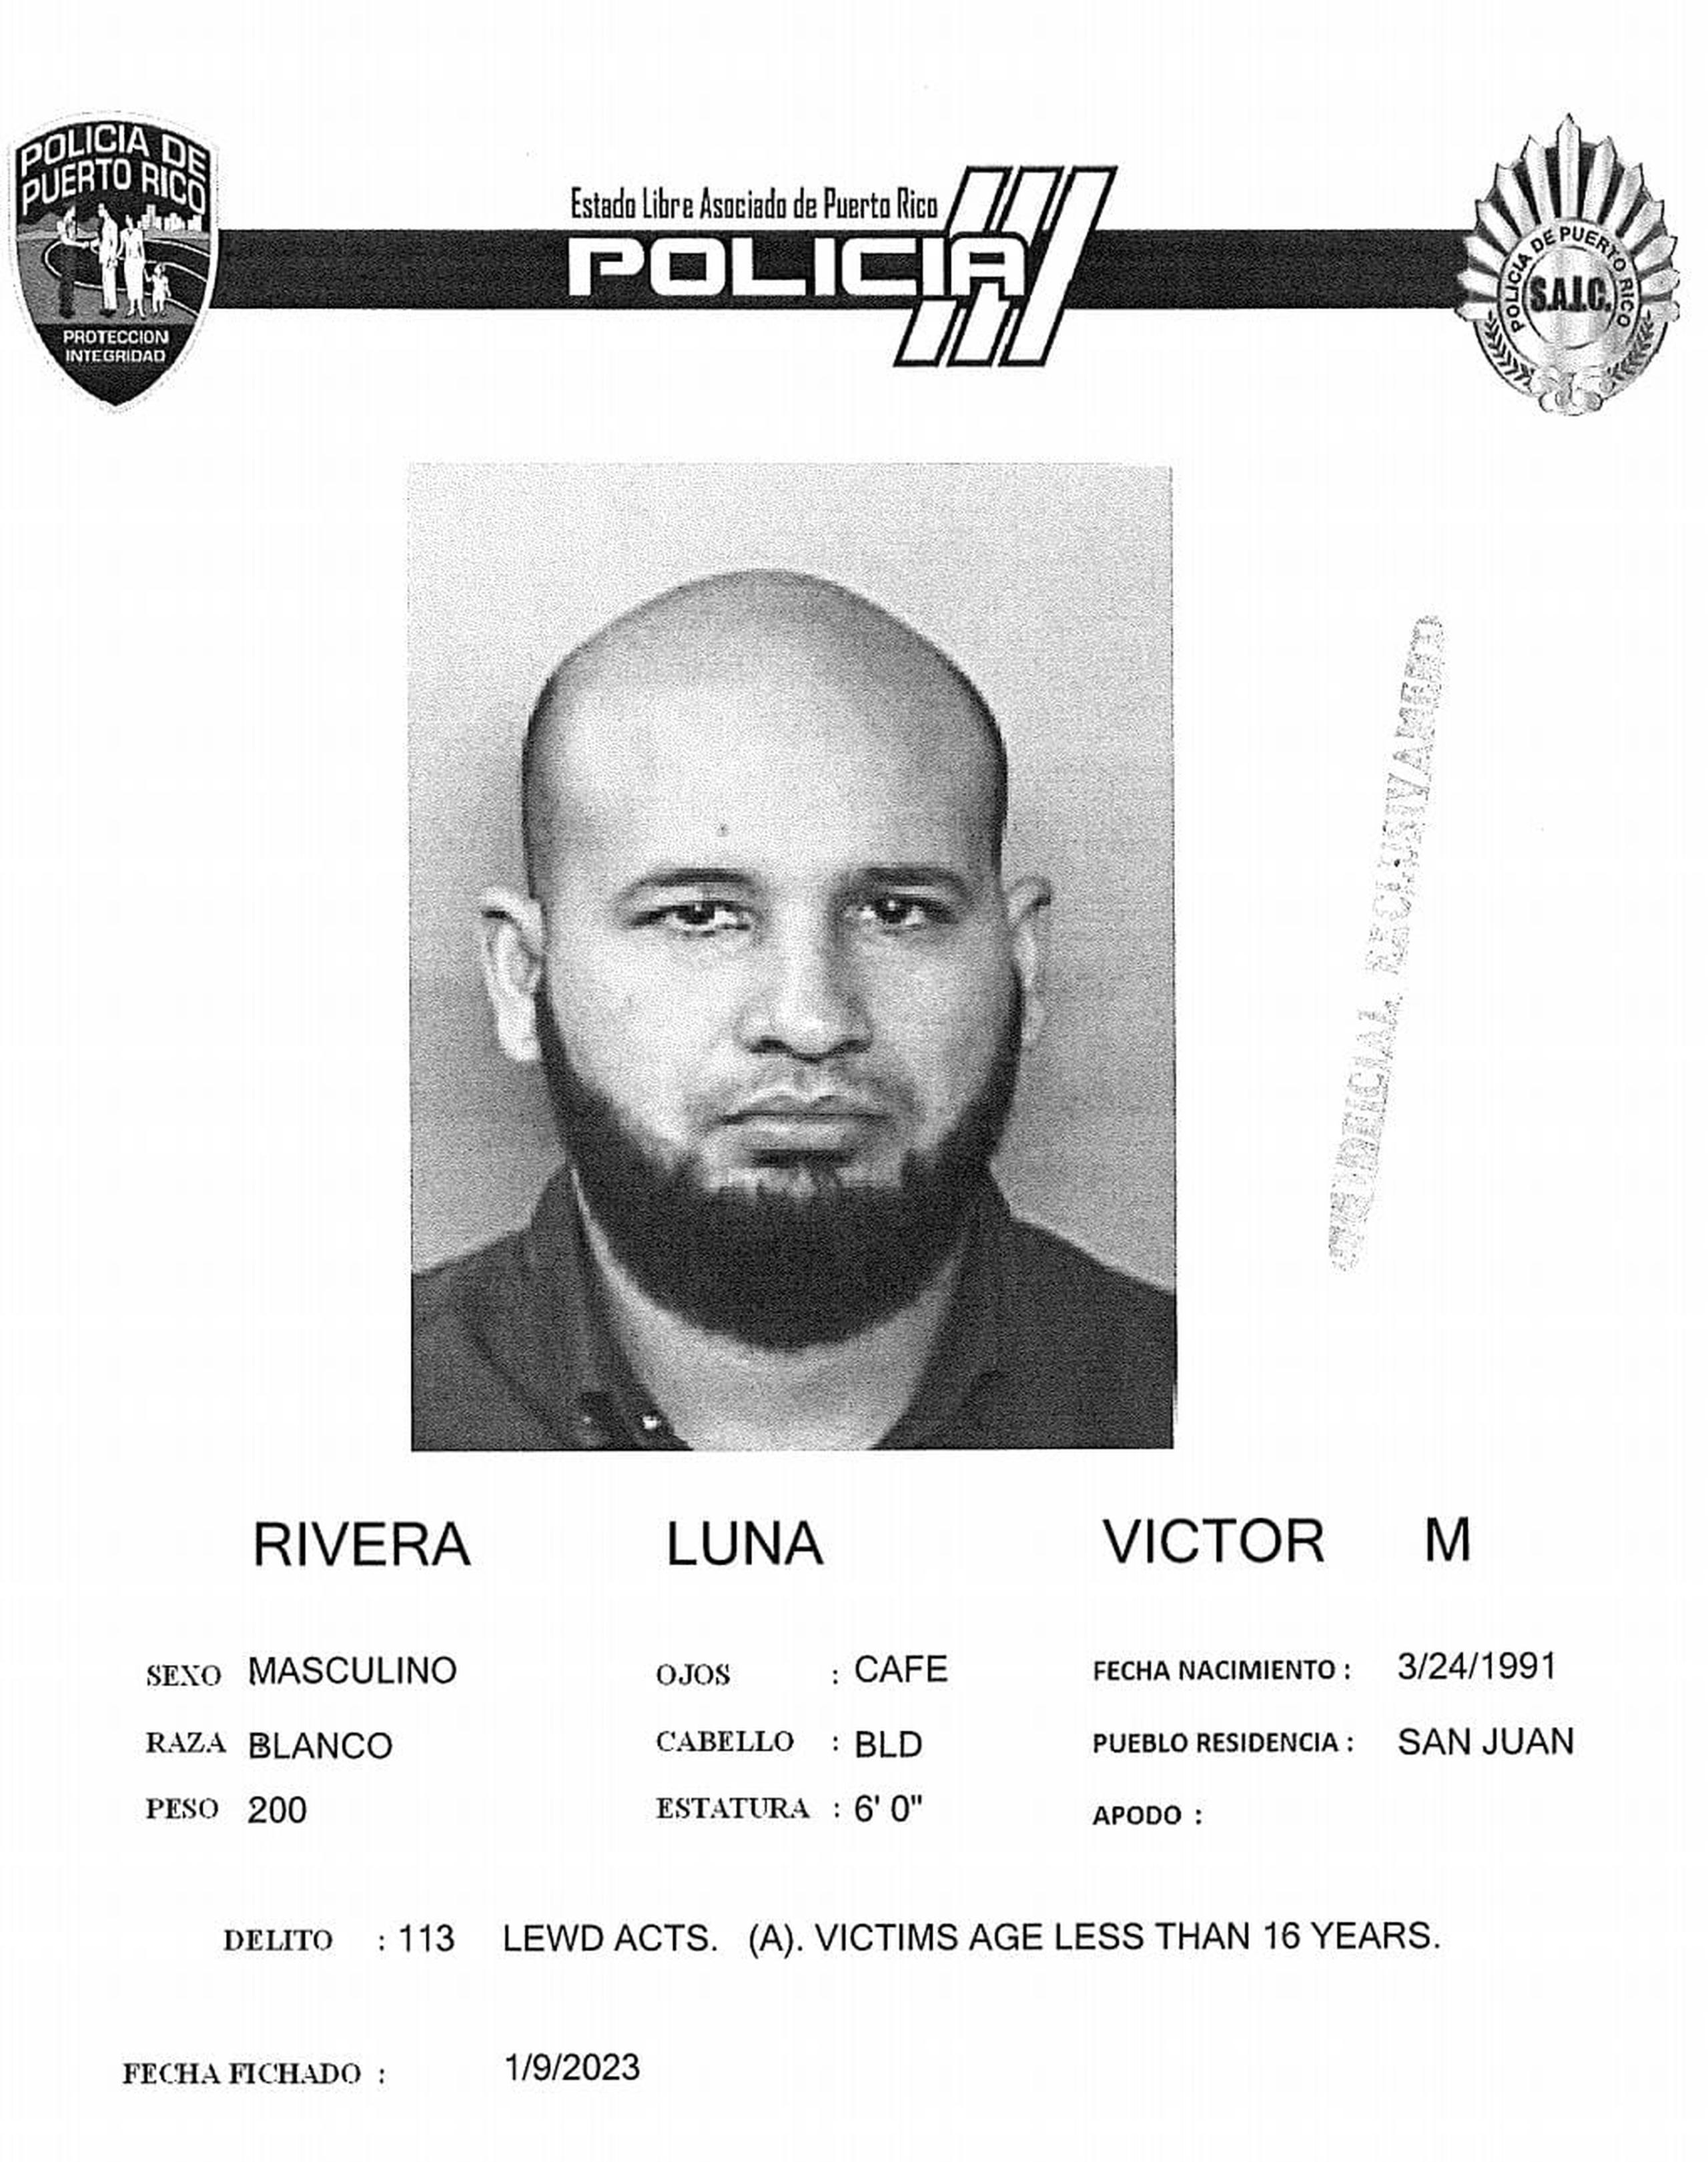 El oficial correccional Víctor M. Rivera Luna fue acusado por cargos de actos lascivos y maltrato de menores y quedó en libertad al prestar la fianza de $45,000.00.